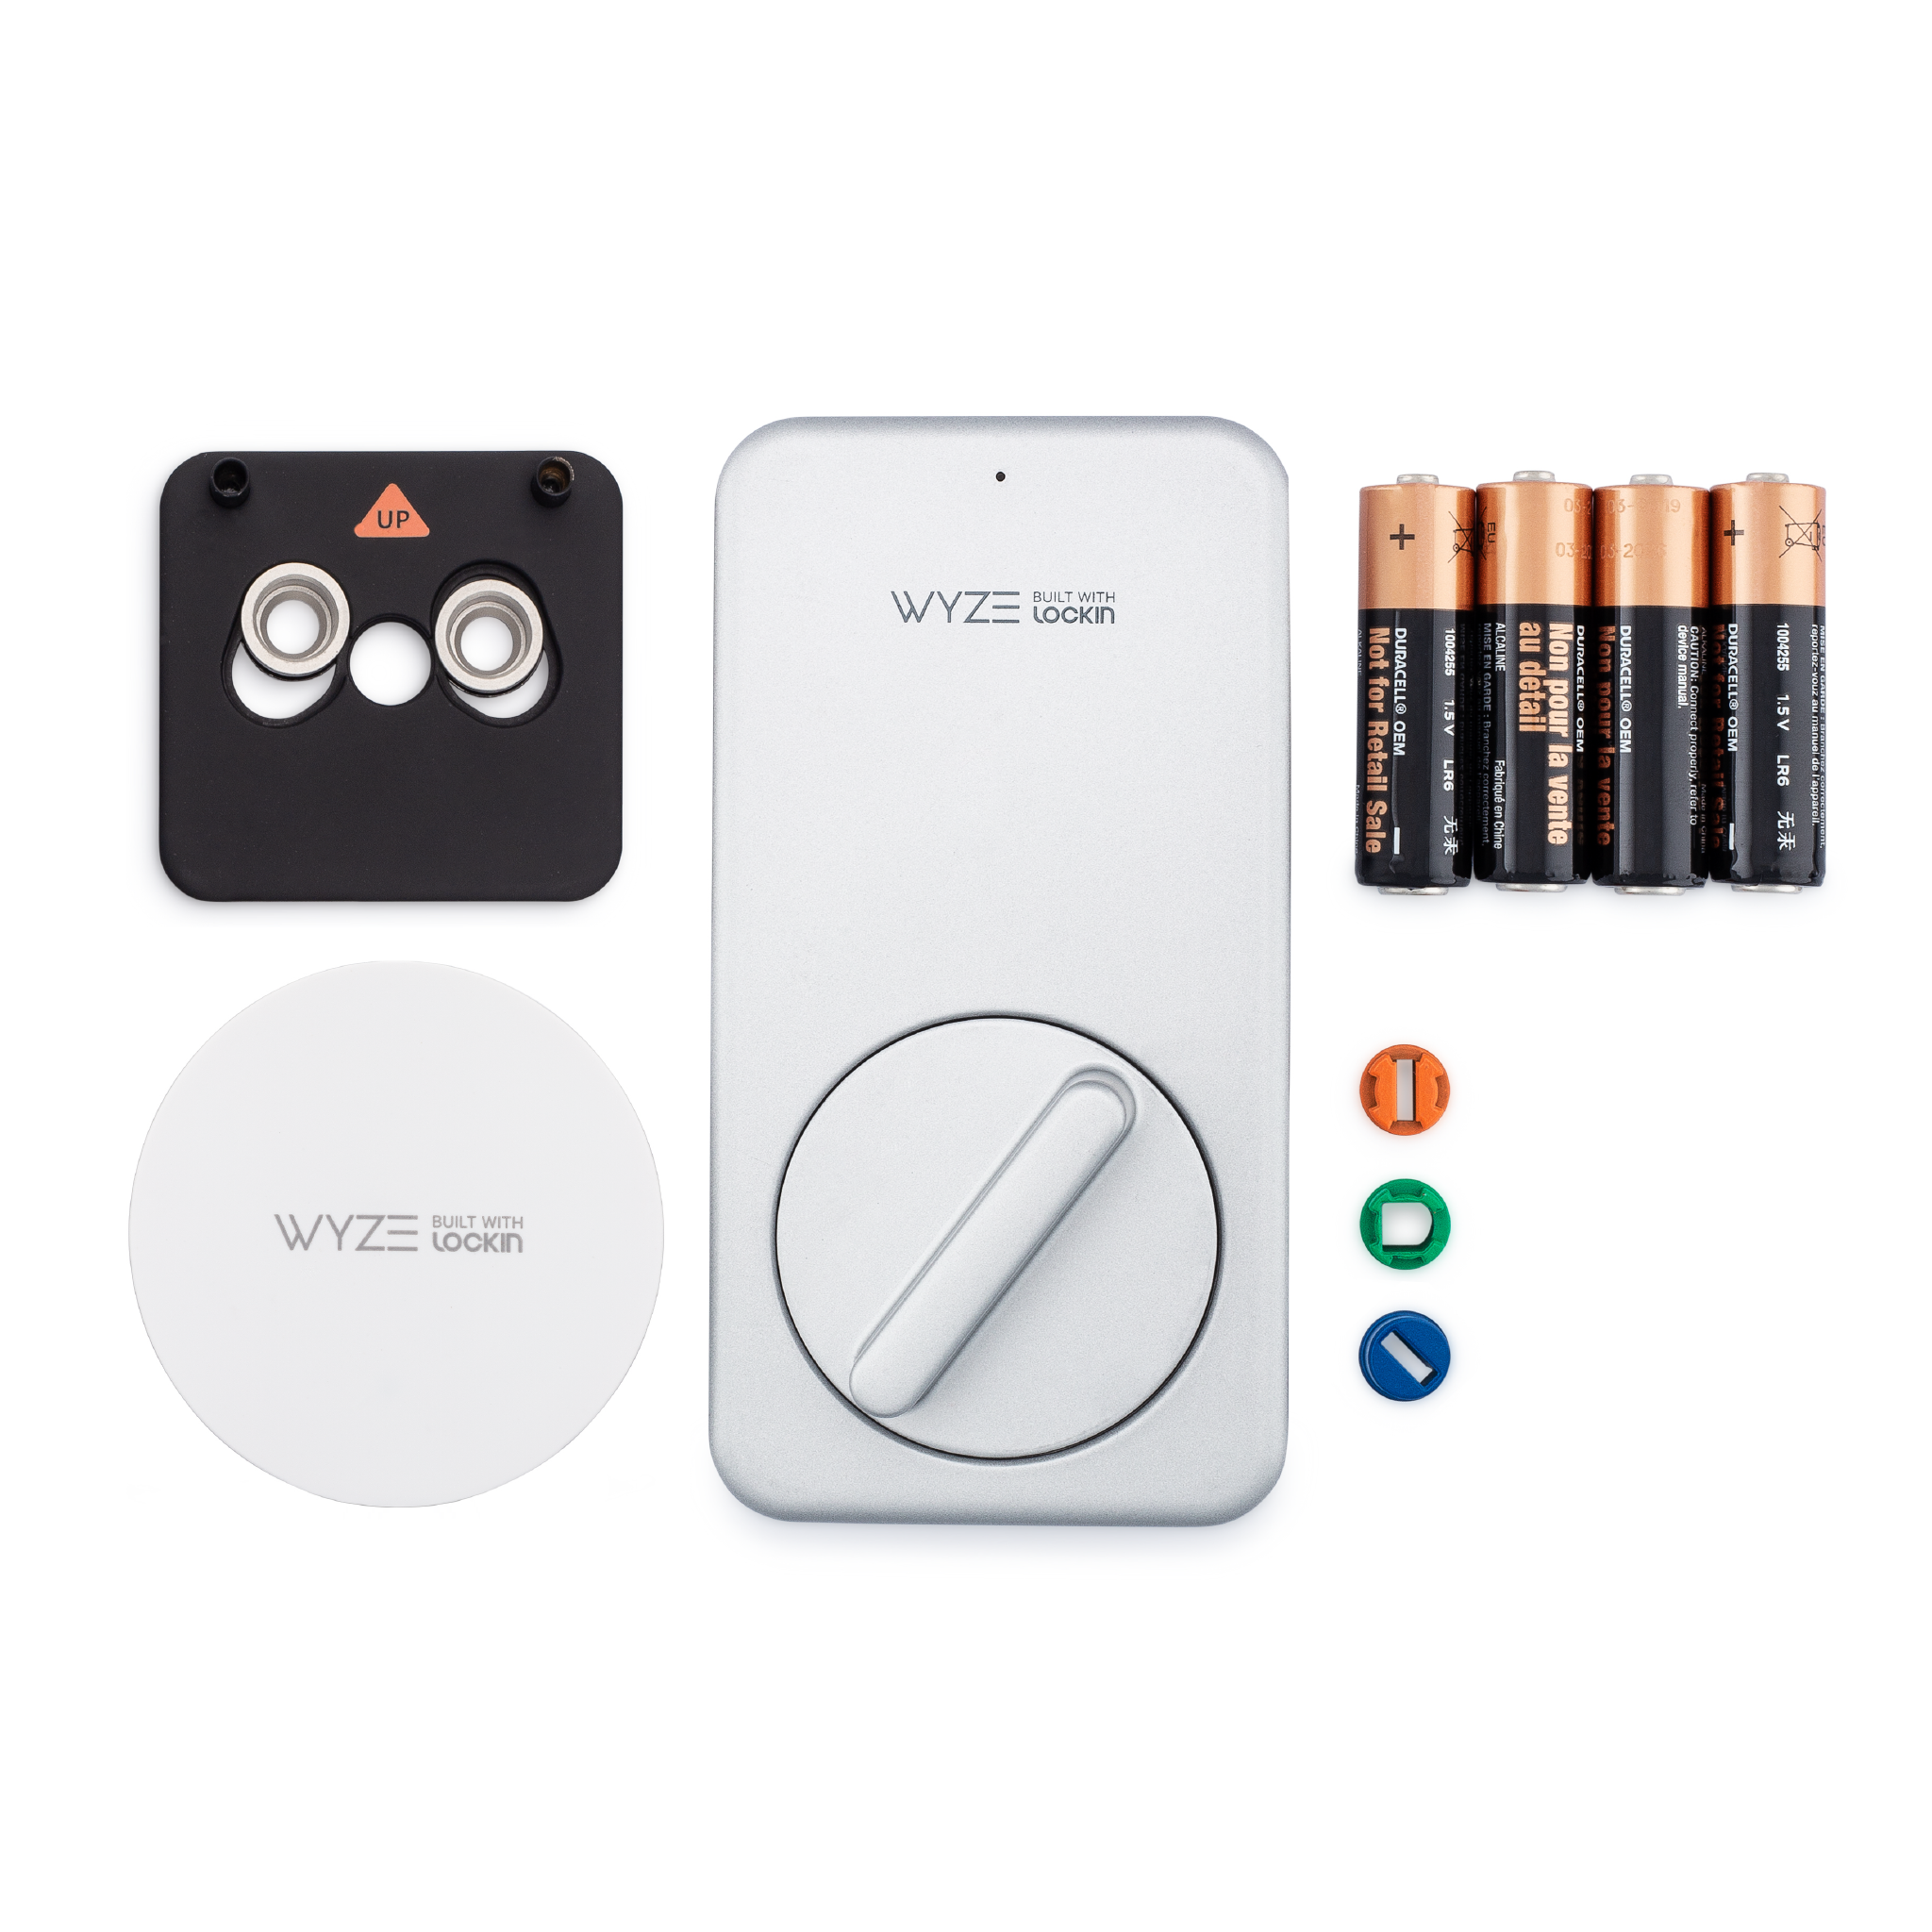 Details about   Wyze Lock Keypad for Wyze LockA Completely Wireless Bluetooth keypad New 